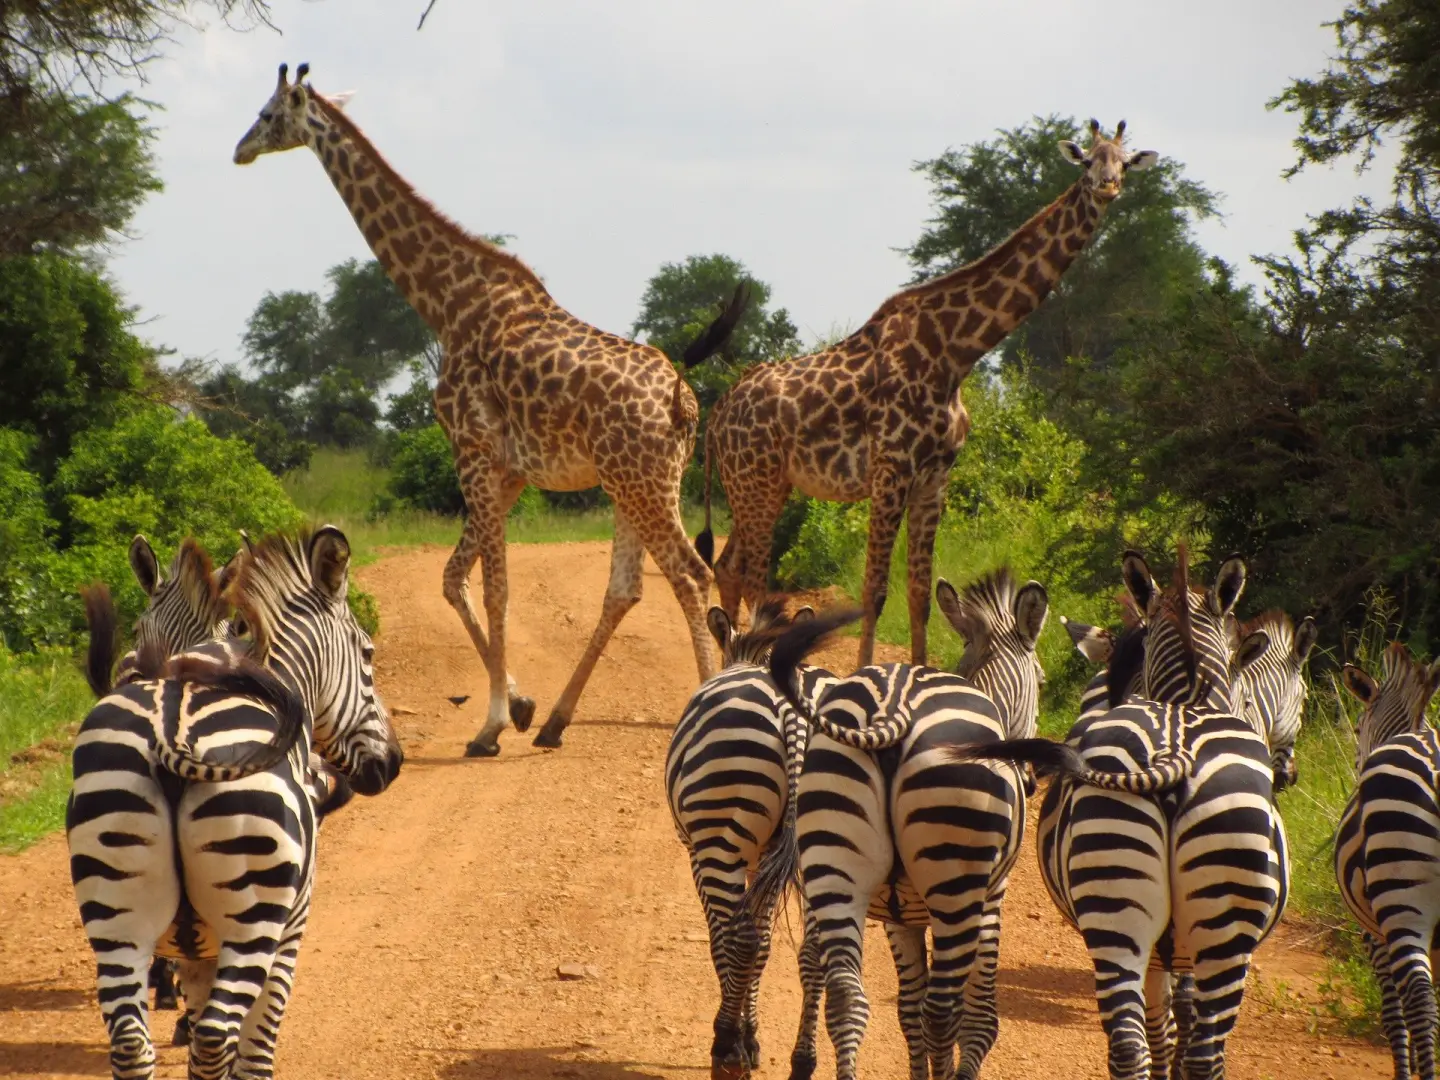 Ven con nosotros a vivir la aventura de tu vida. Un viaje enriquecedor para descubrir las maravillas de Tanzania en grupo. Un safari solidario diferente